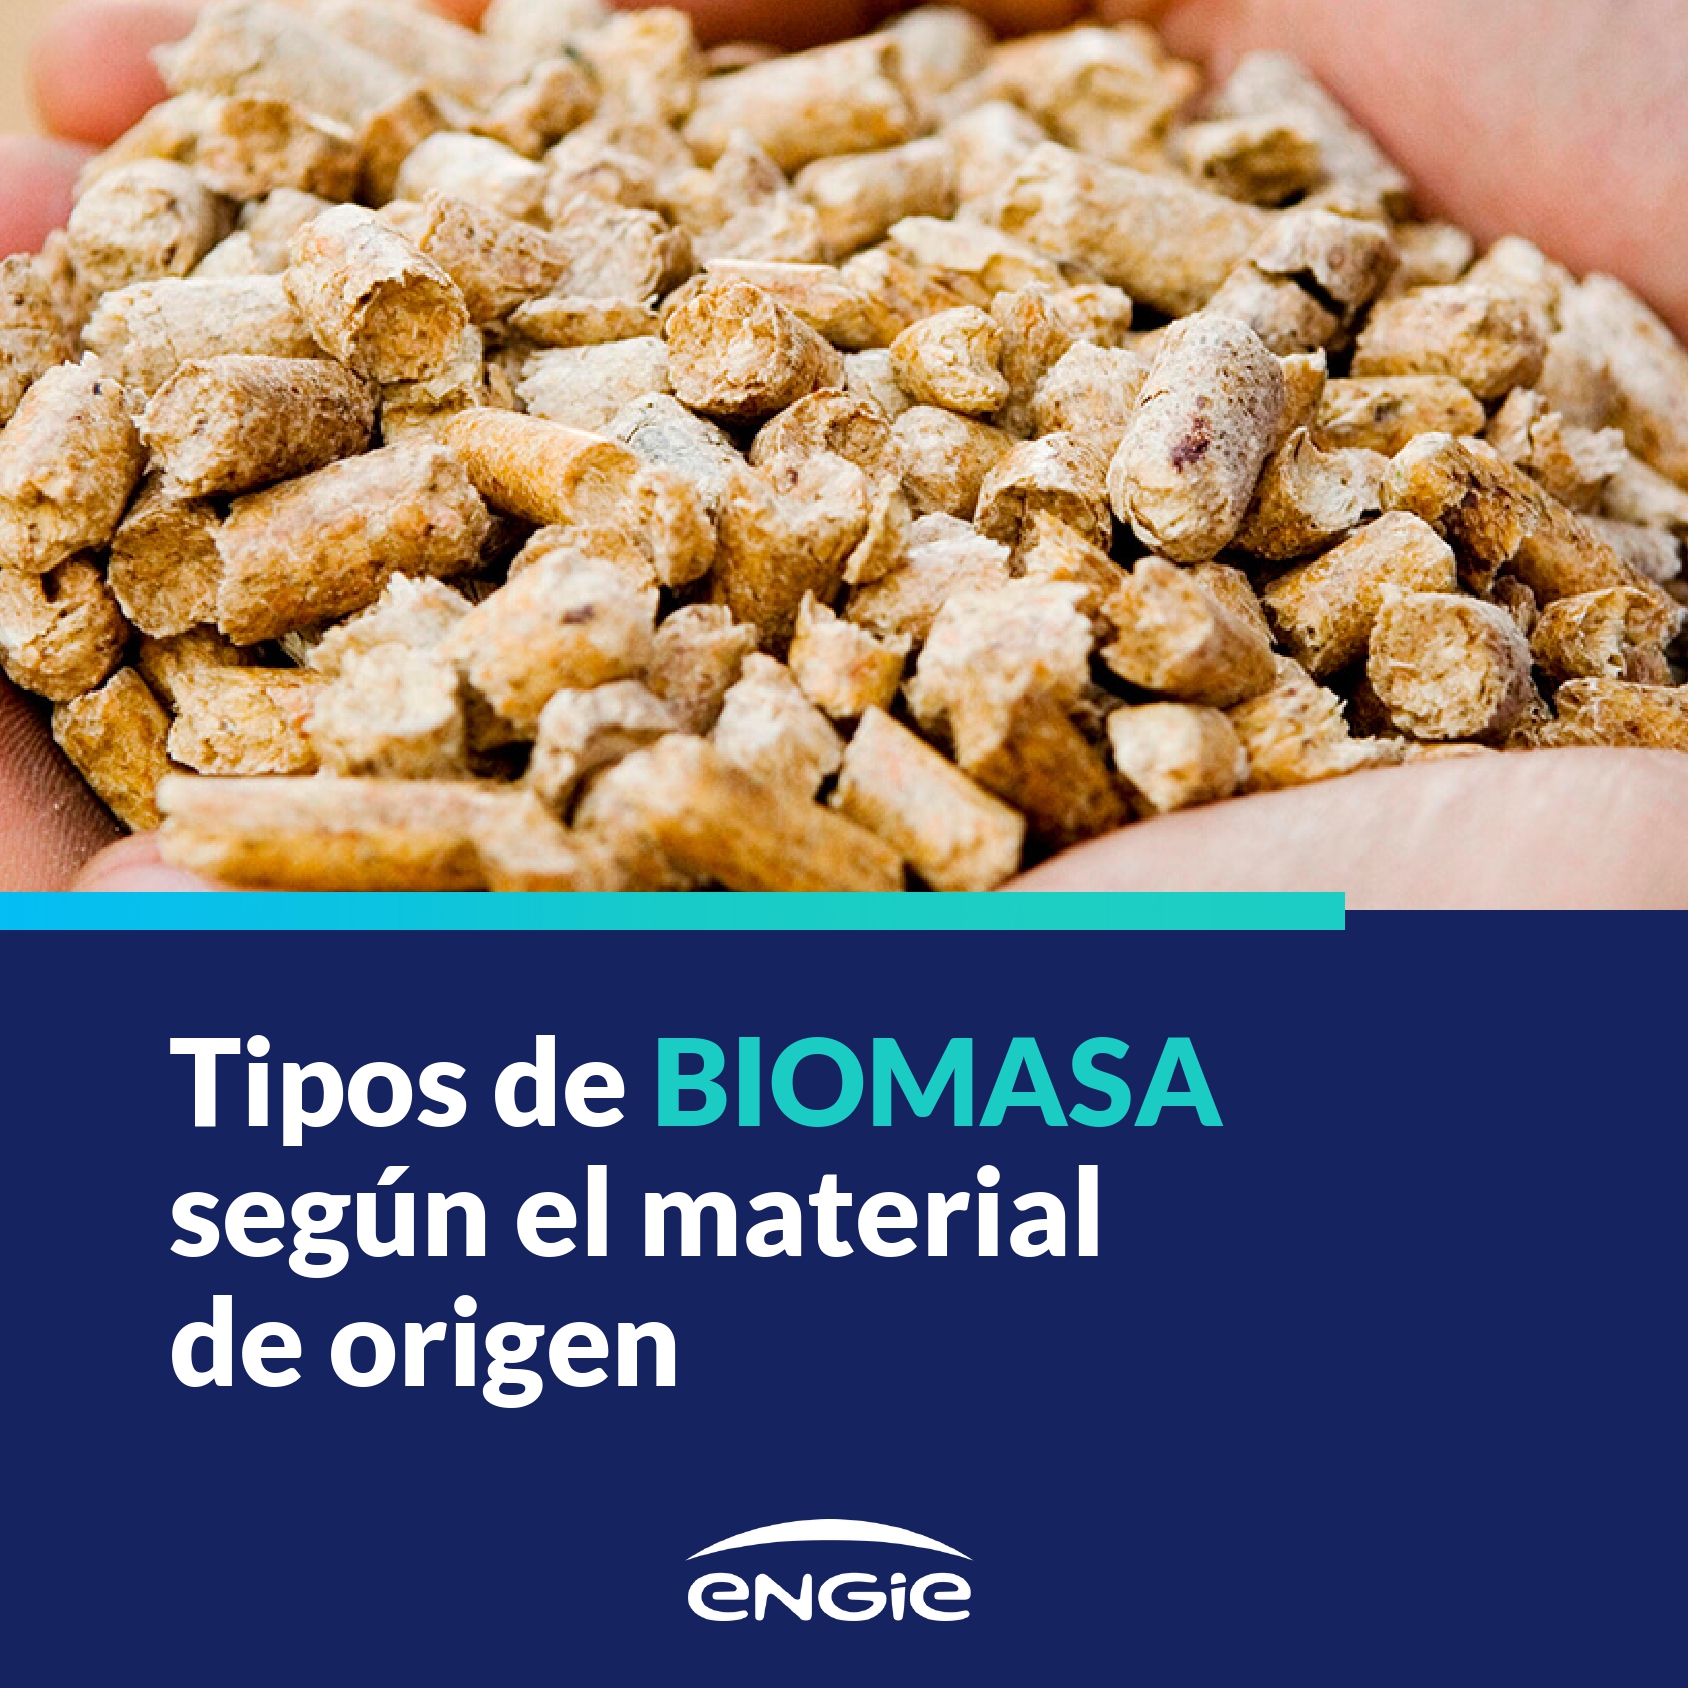 Tipos de combustibles de biomasa para producir energía renovable en España: desde la astilla forestal al residuo municipal.